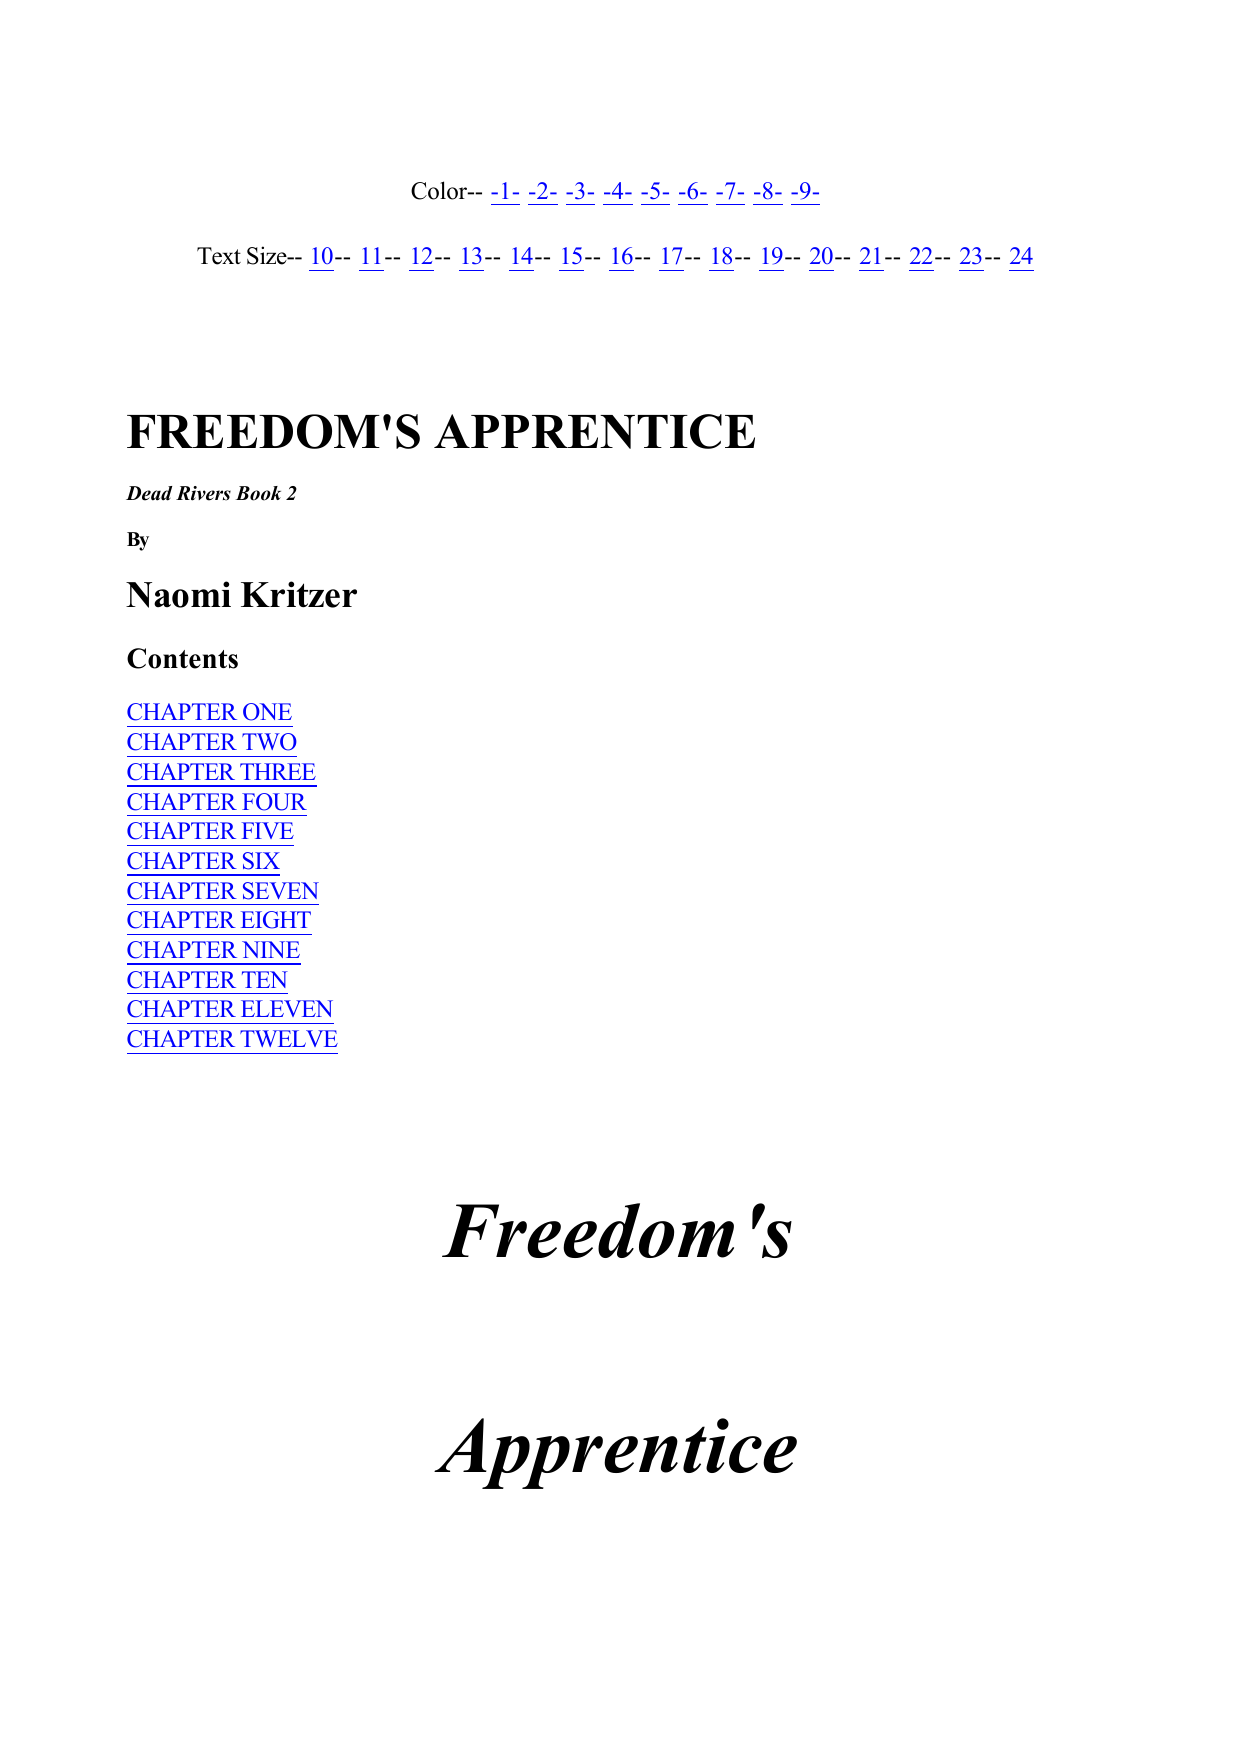 Freedom's Apprentice